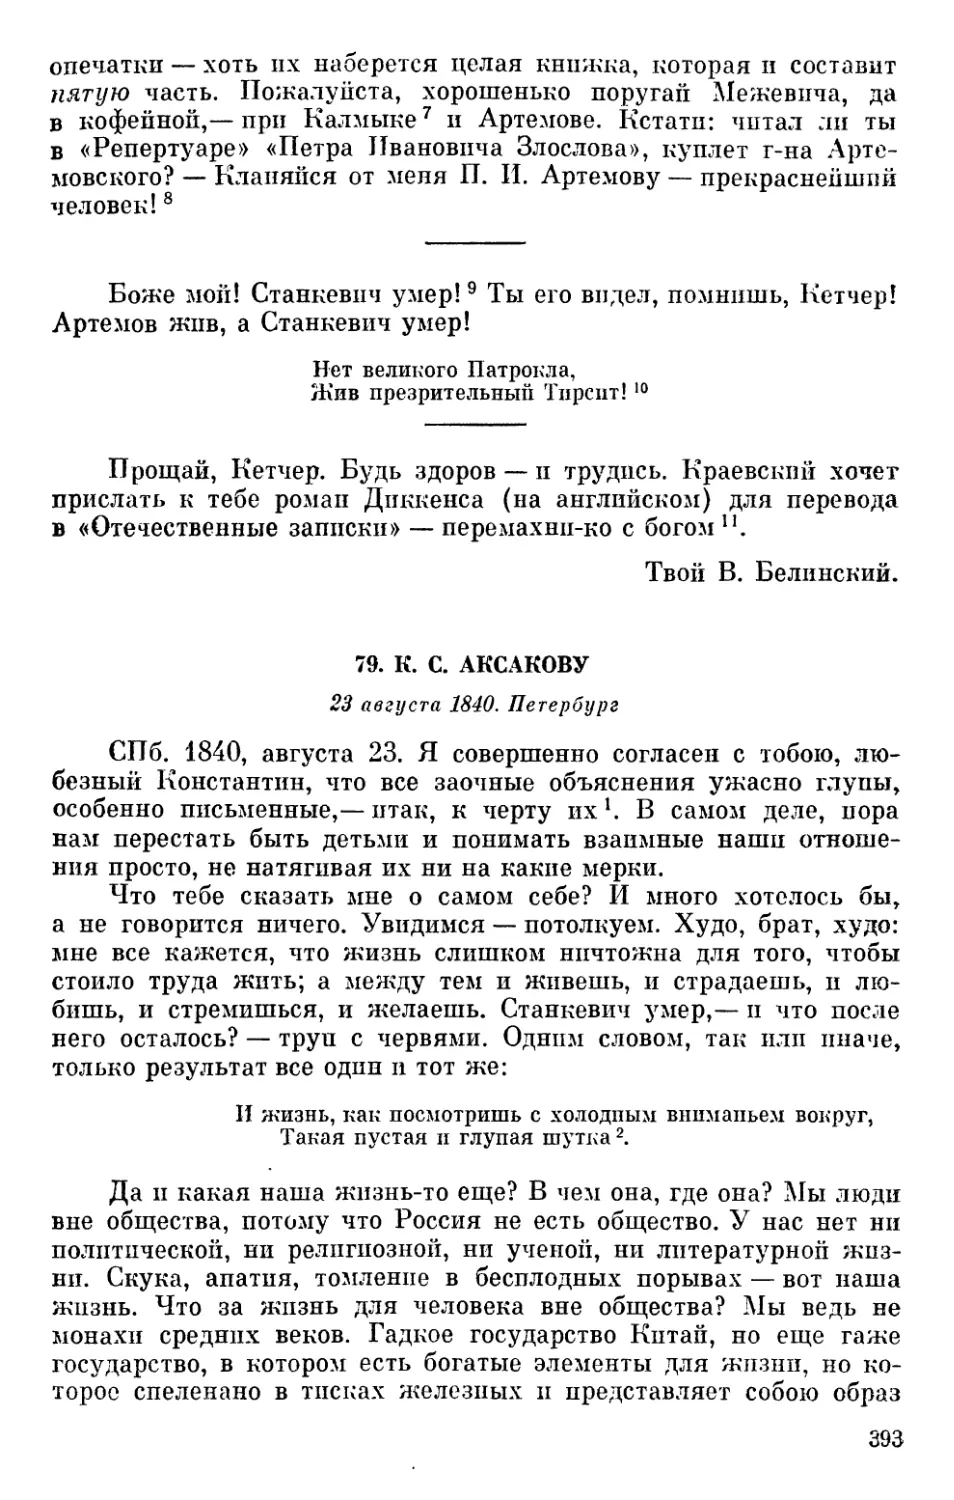 79. К. С. Аксакову. 23 августа 1840